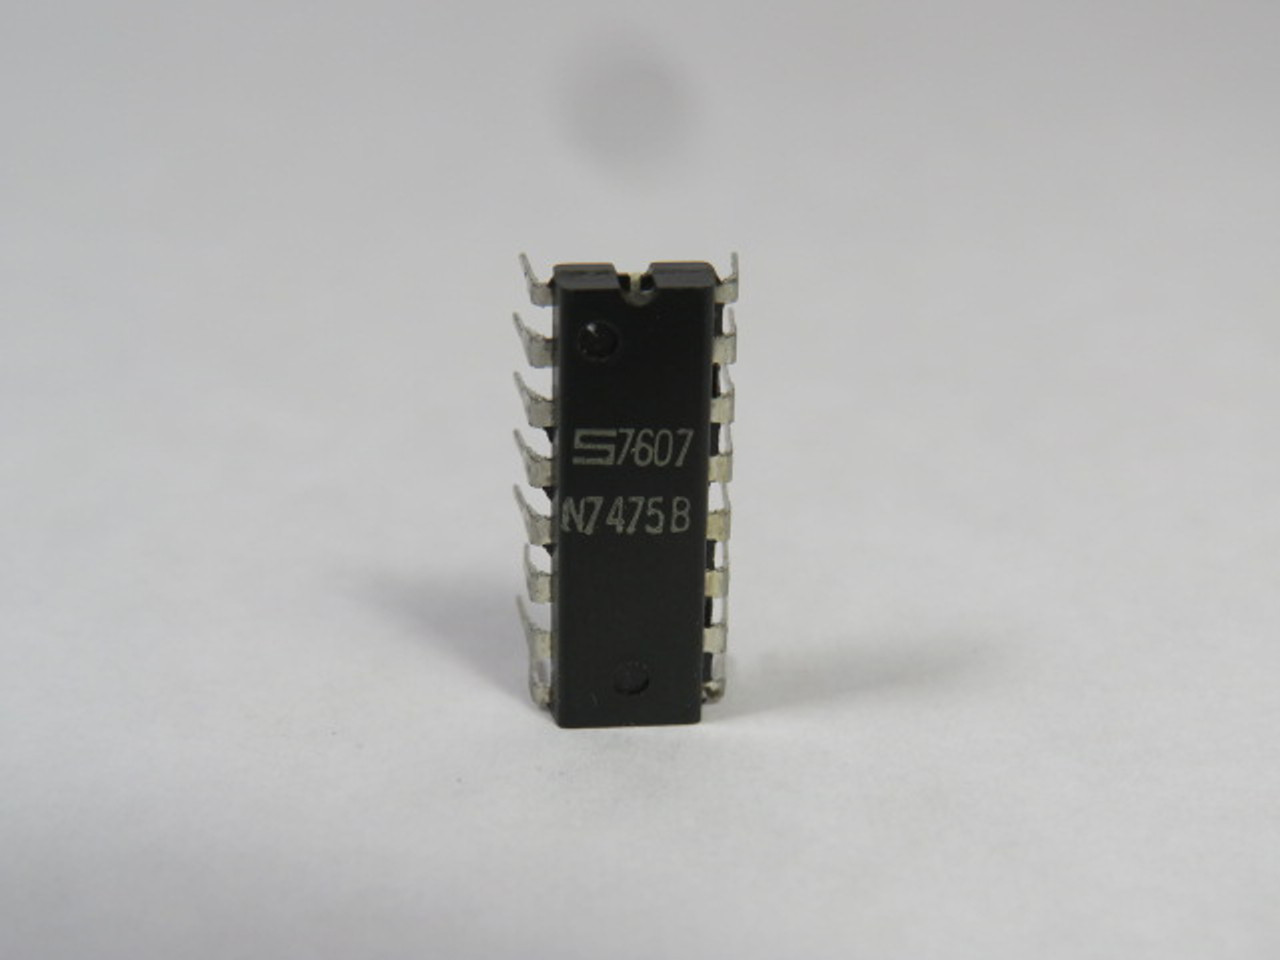 Signetics N7475B IC Chip USED